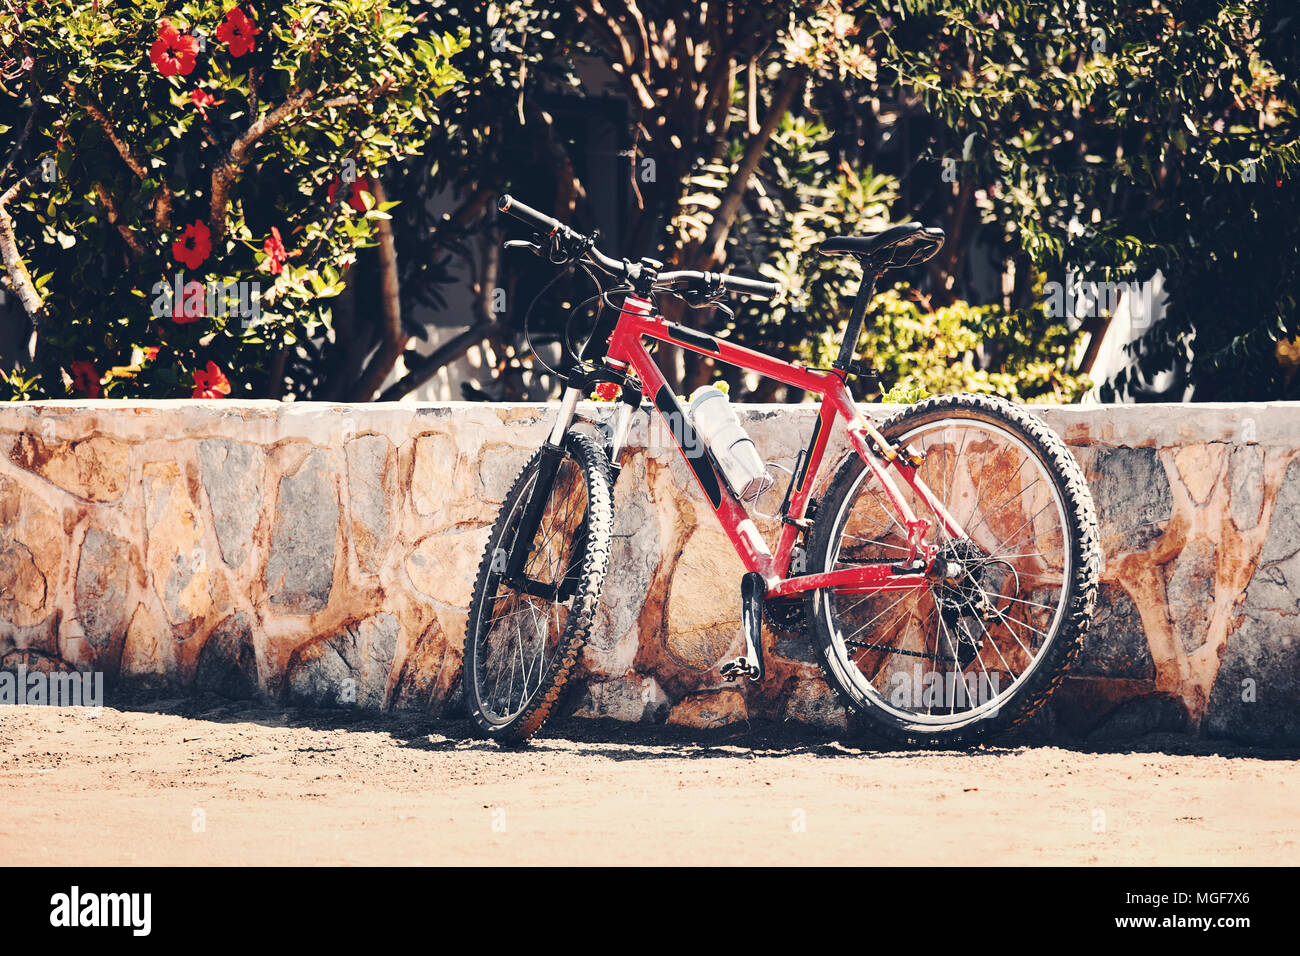 Eine alte Red Mountain bike auf einem Bürgersteig gegen eine Mauer aus Stein, die von einem Garten lehnte Stockfoto